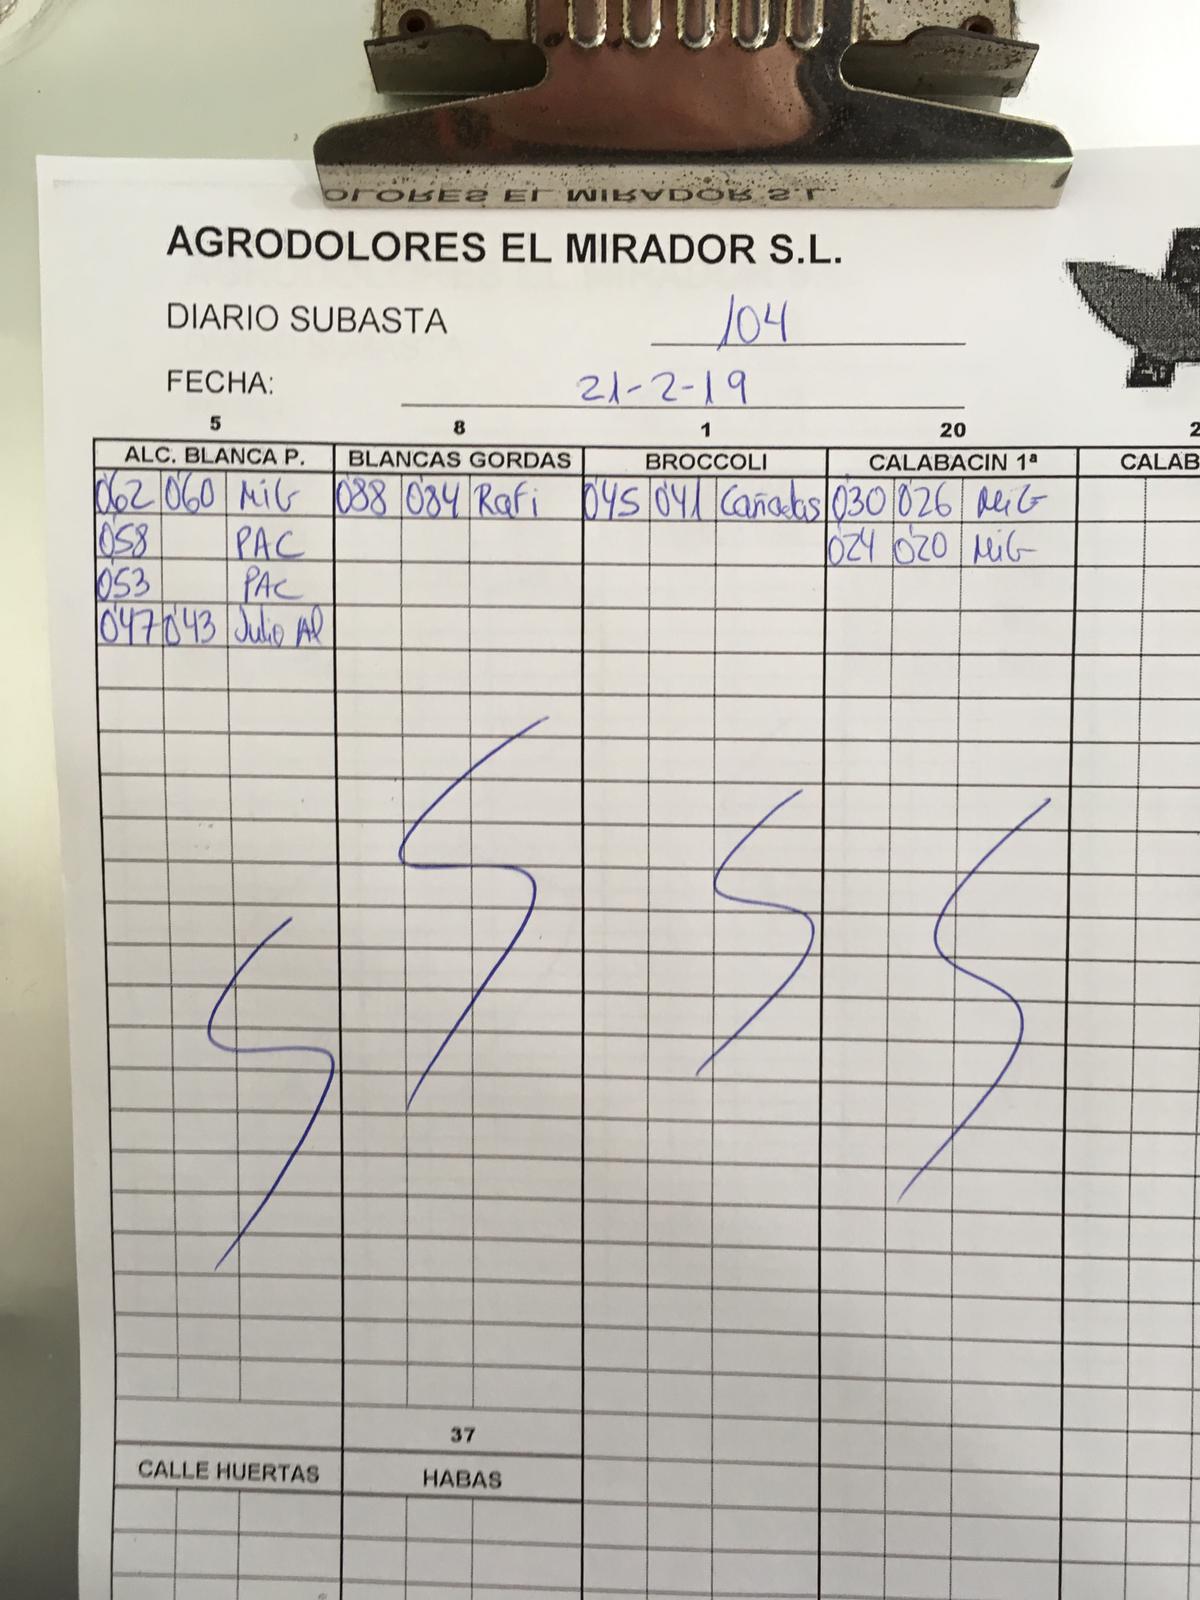 Subasta hortofrutícola Agrodolores El Mirador 21 de Febrero 2019